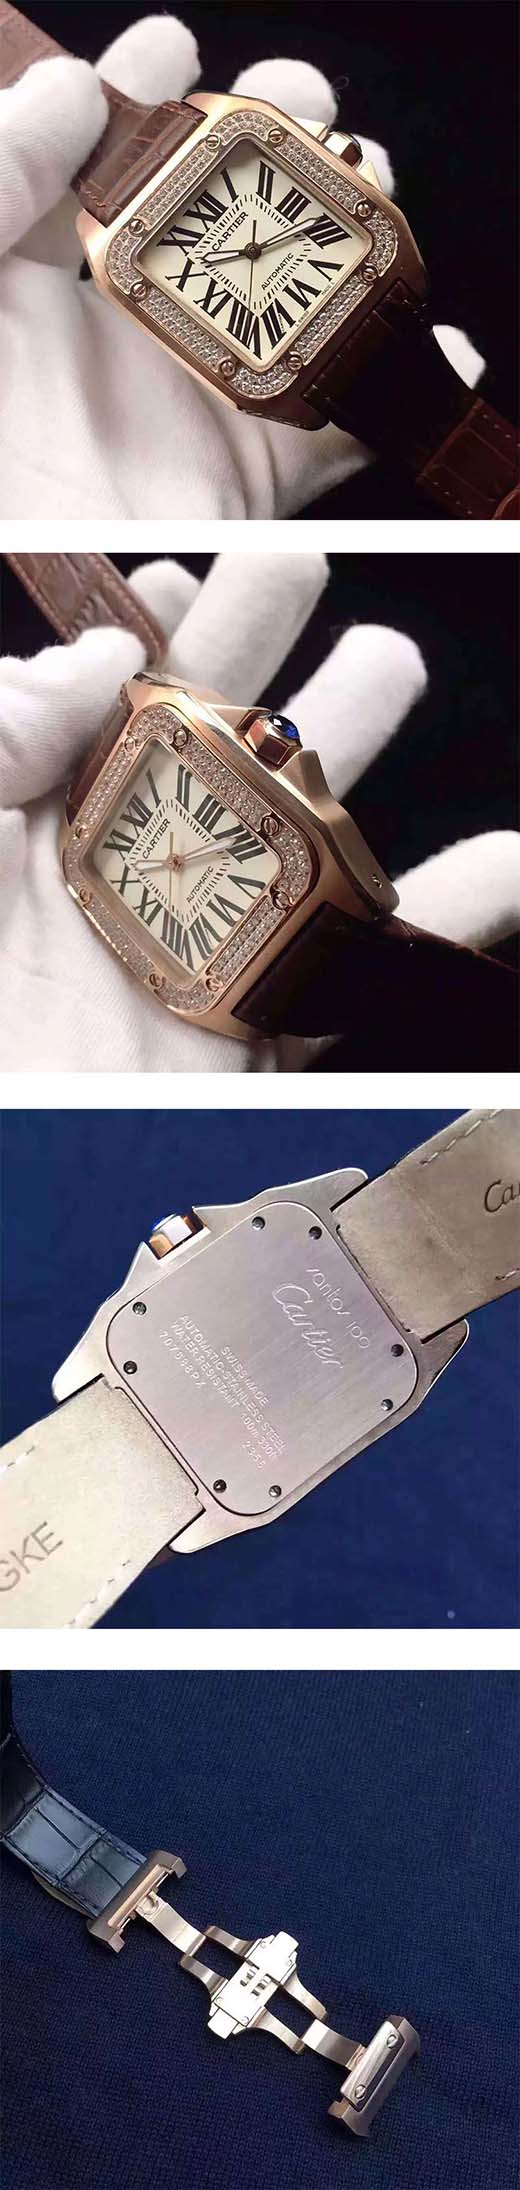 【販売促進中】カルティエサントス コピー時計、精度も本物と同じ